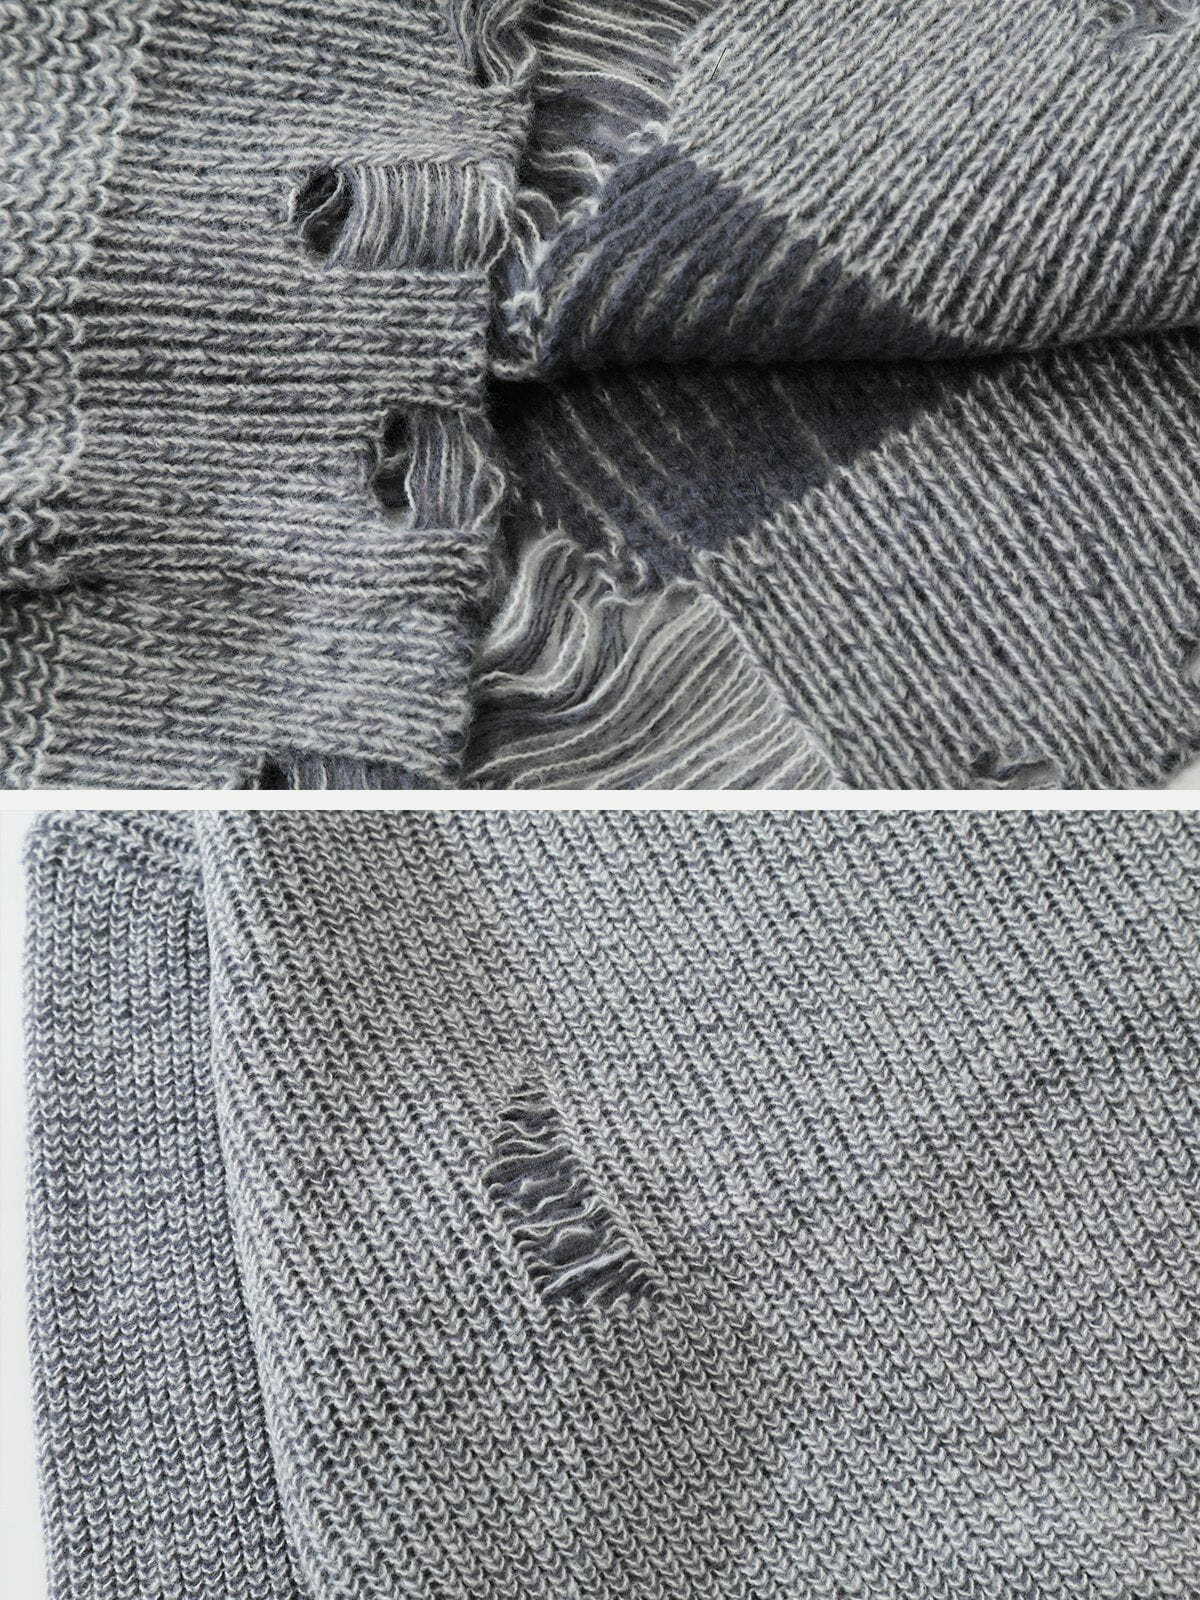 retro ripped knit sweater y2k fashion essential 1674